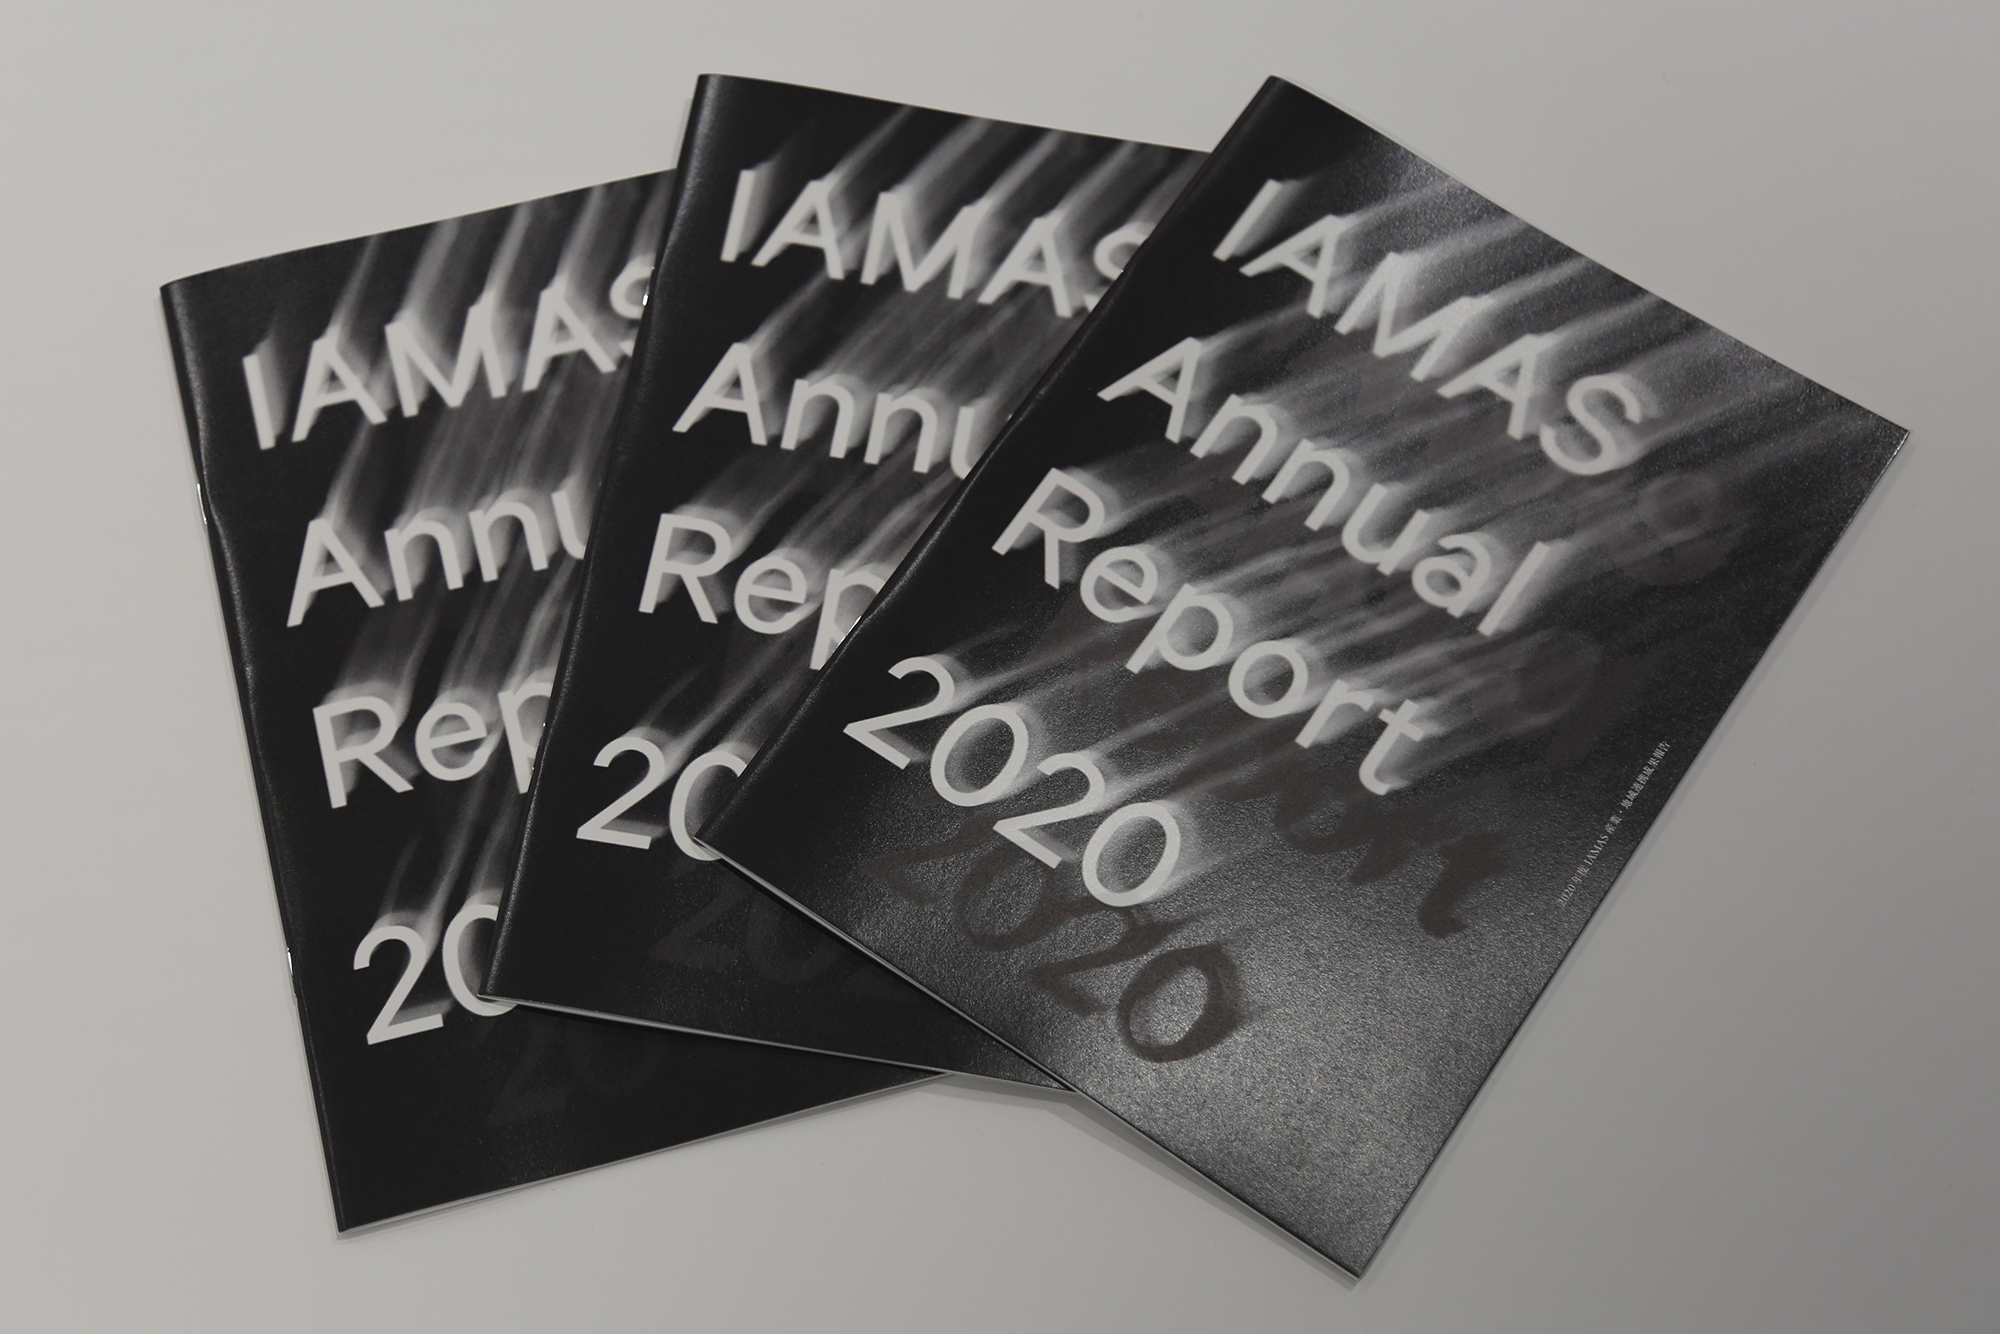 IAMAS Annual Report 2020: Industrial & Regional Cooperative Achievements Report`